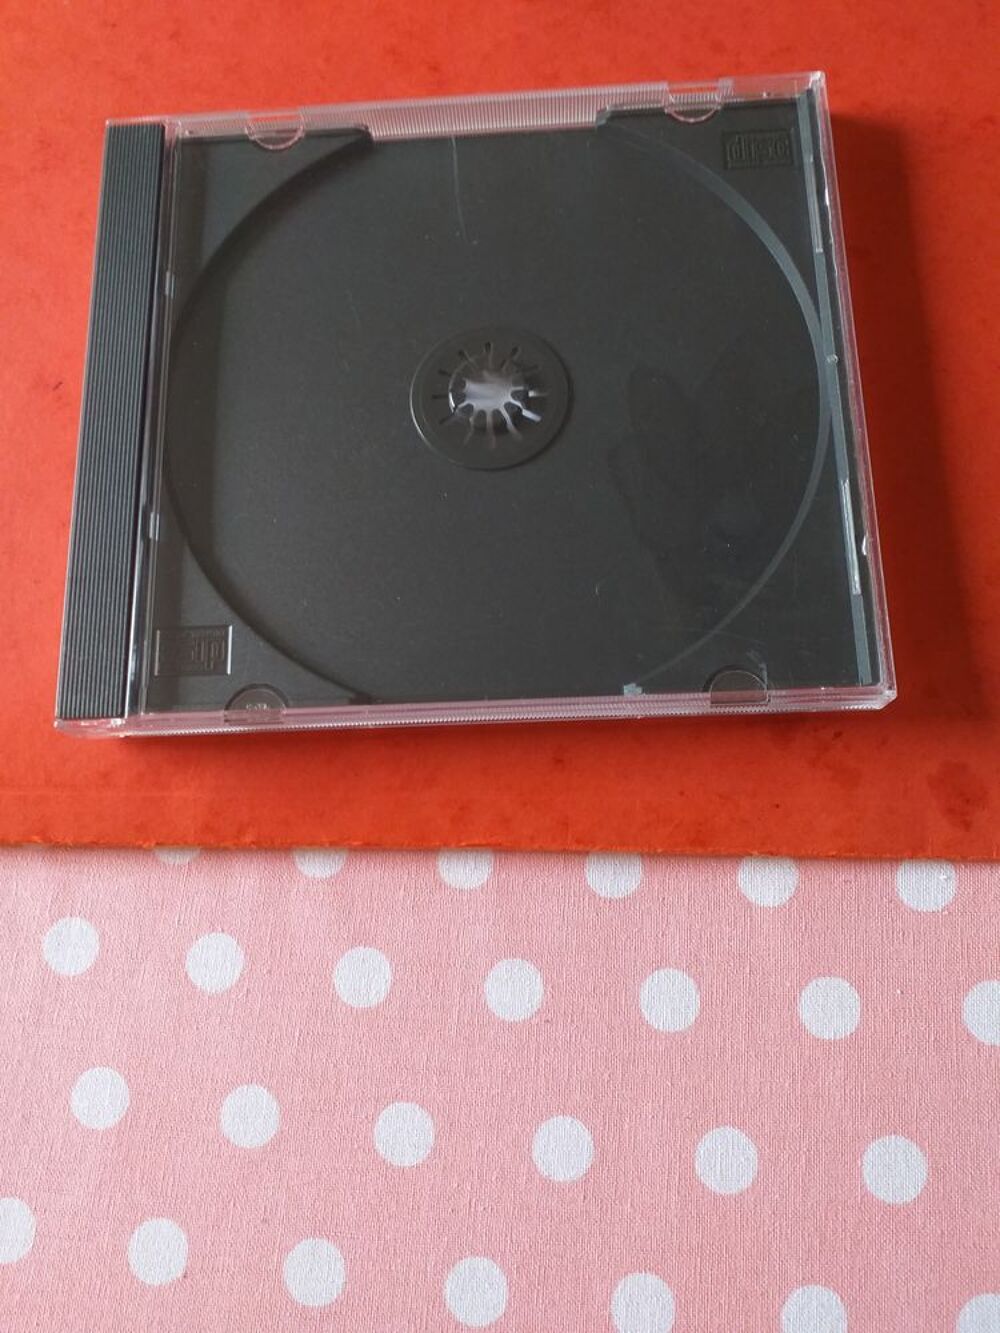 BO&Icirc;TIERS POUR DVD OU CD CD et vinyles